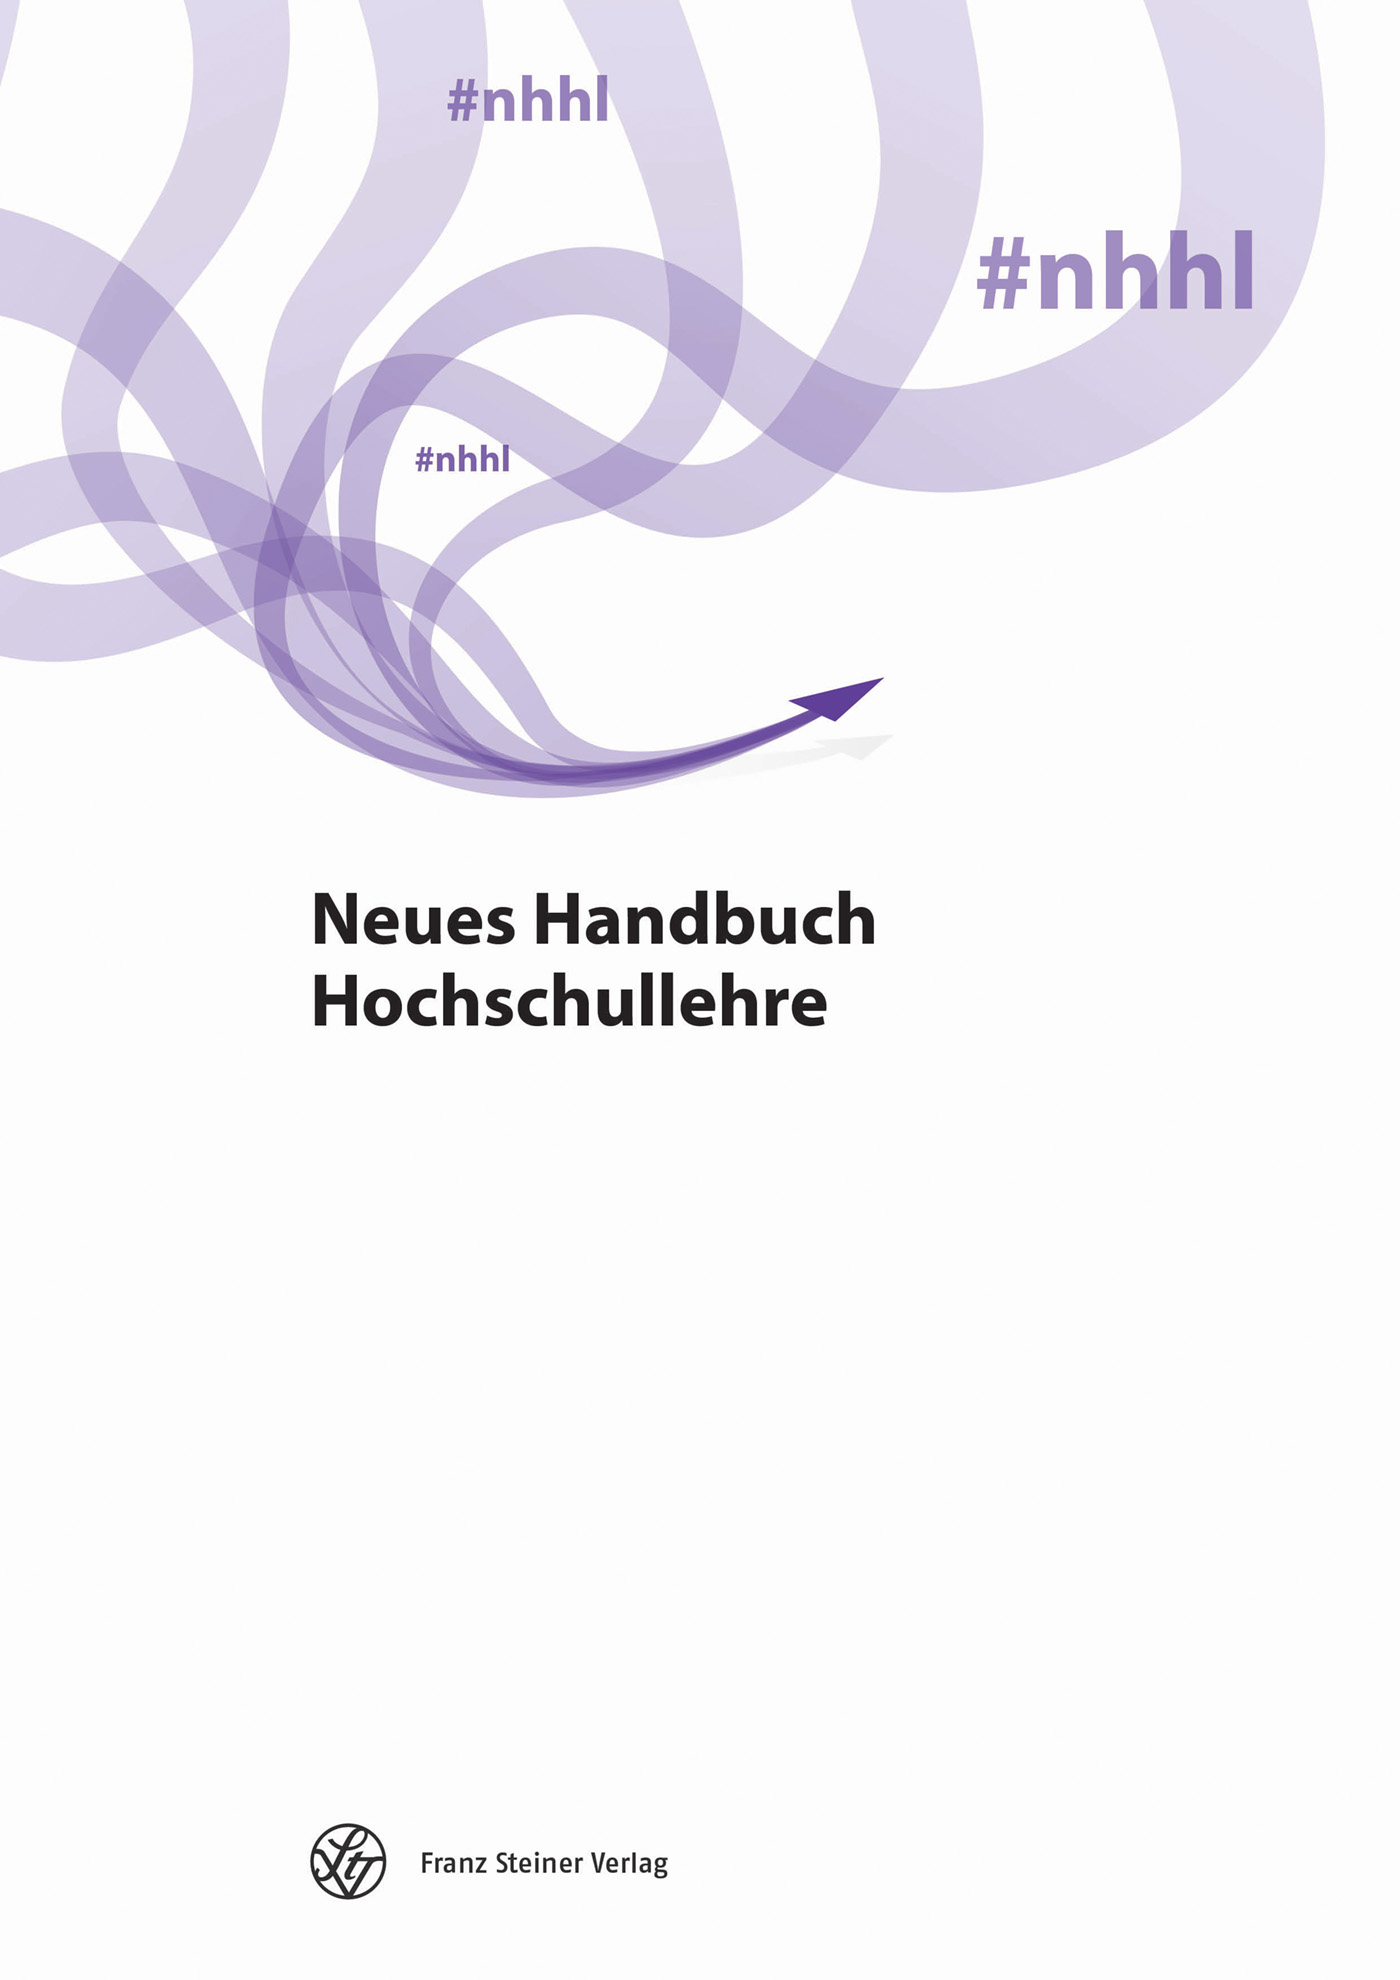 Neues Handbuch Hochschullehre - print + online